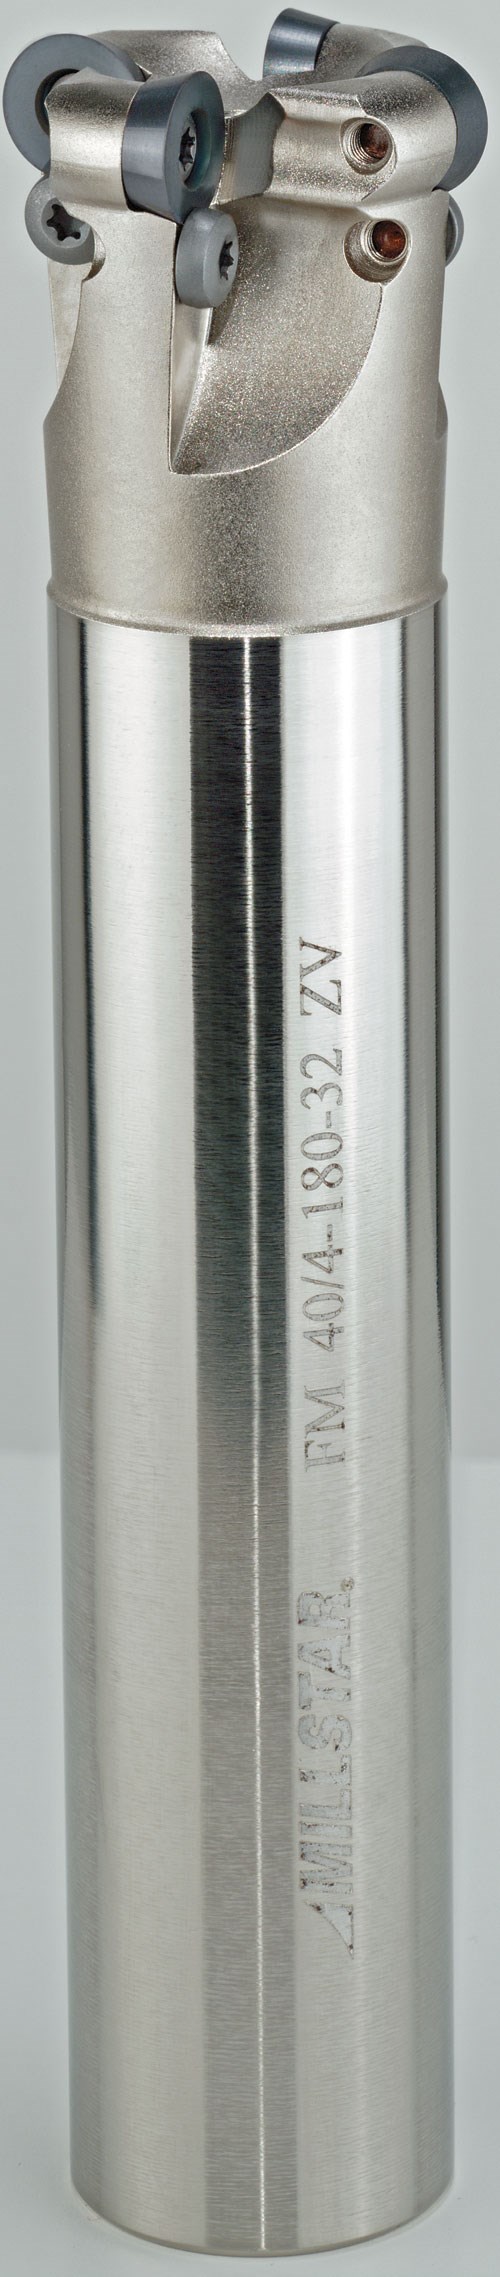 40mm shank style 4 flute button cutter